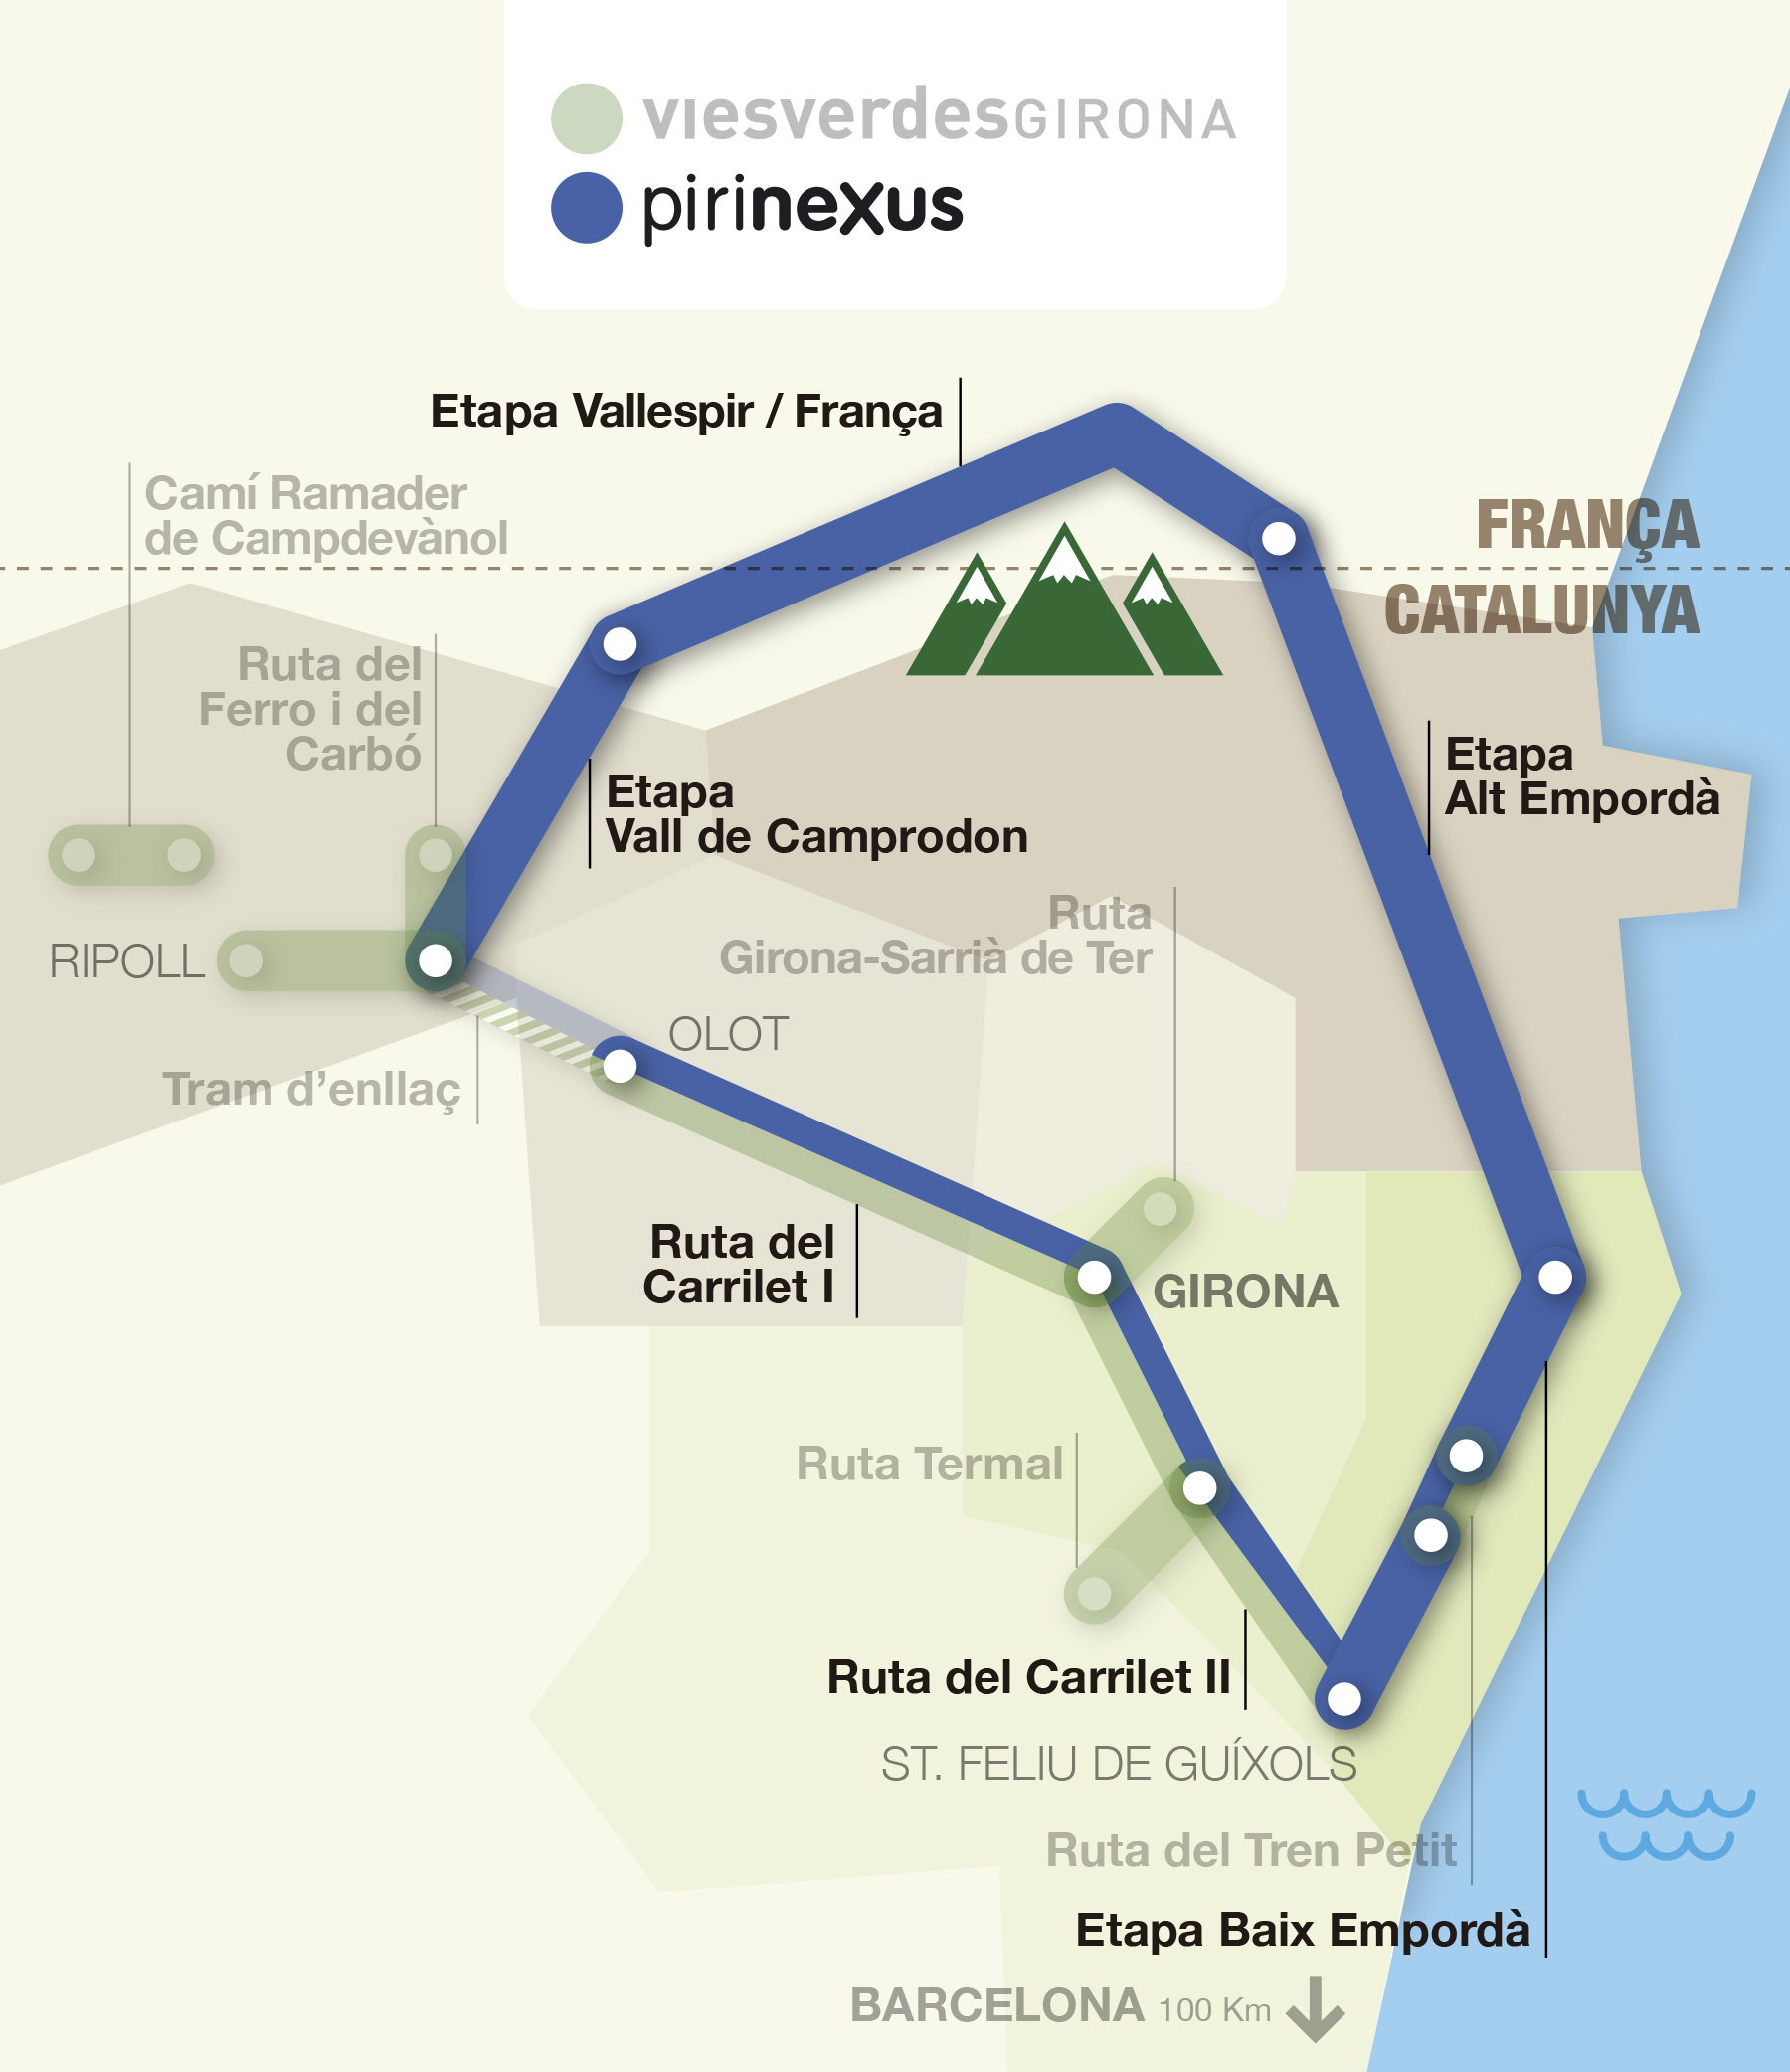 Mapa interactiu de les rutes vies verdes i pirinexus